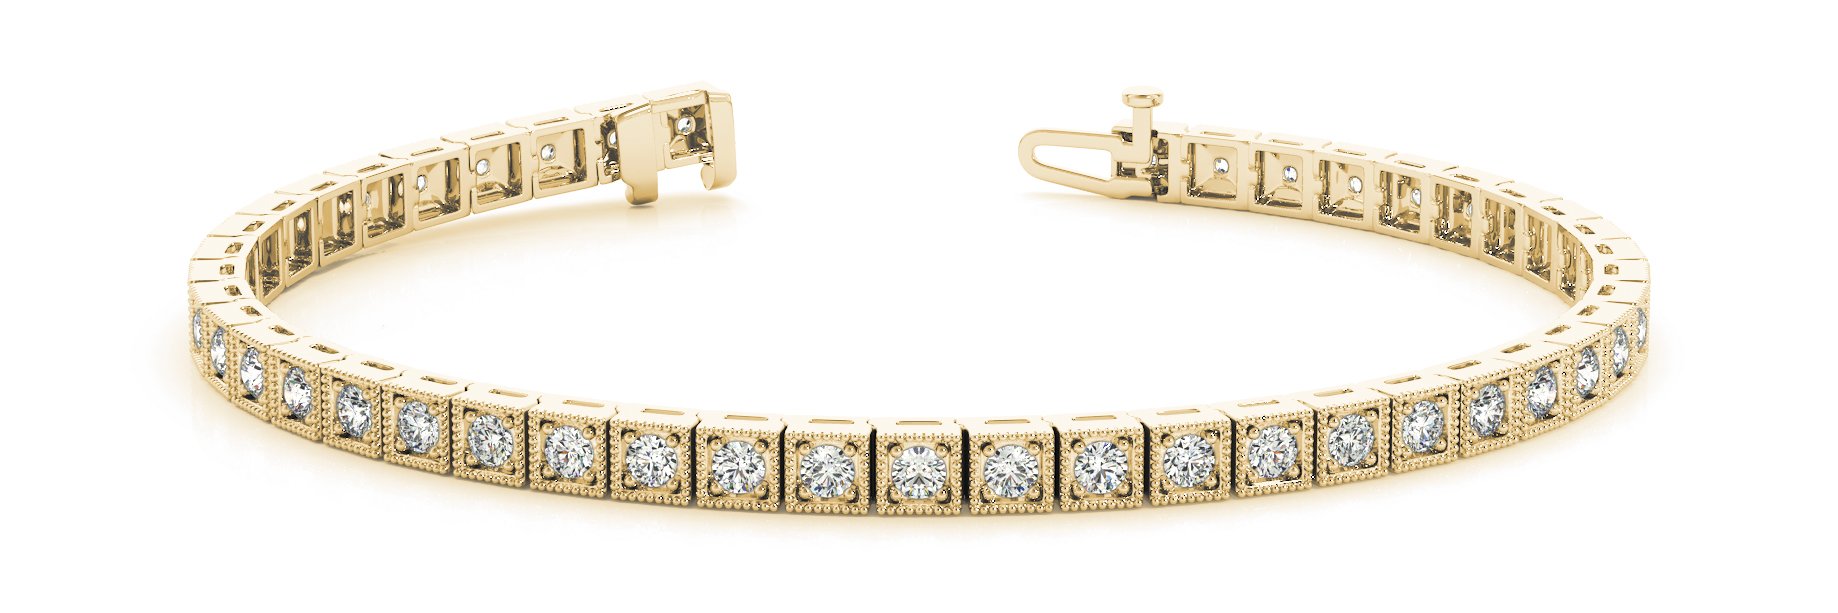 Line Diamond Bracelet 1.06ct tw Ladies - 14kt Gold